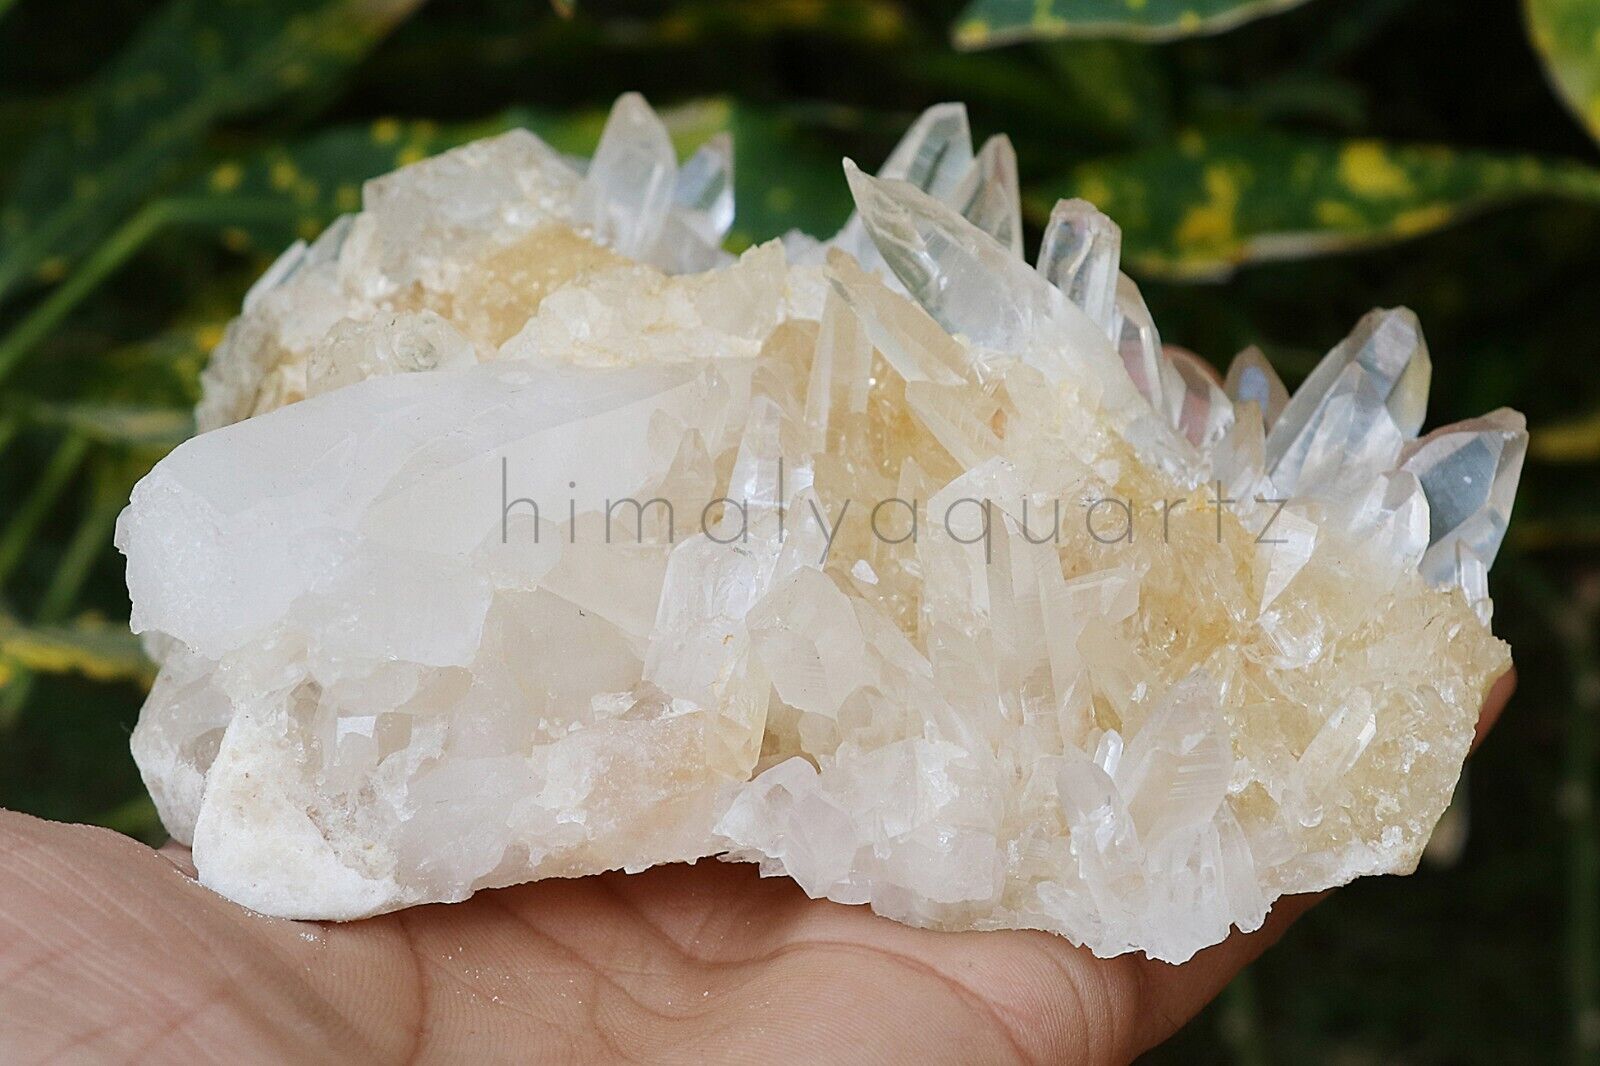 High Grade Himalayan Yellow Quartz Rough Healing Crystal 620 gm Minerals Quartz